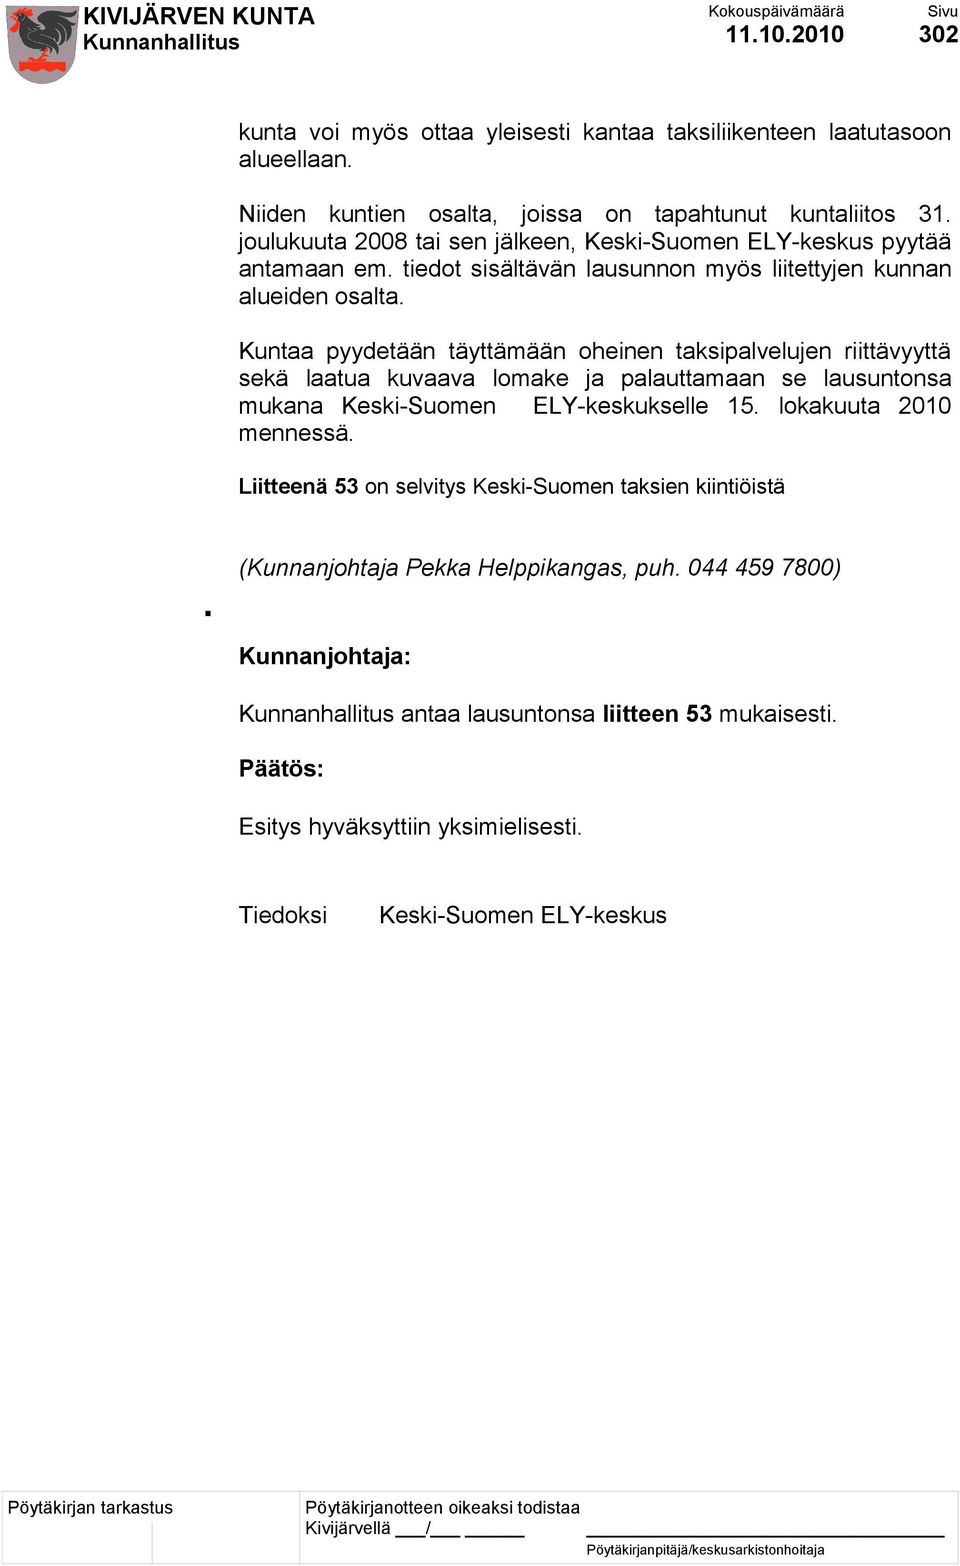 Kuntaa pyydetään täyttämään oheinen taksipalvelujen riittävyyttä sekä laatua kuvaava lomake ja palauttamaan se lausuntonsa mukana Keski-Suomen ELY-keskukselle 15.